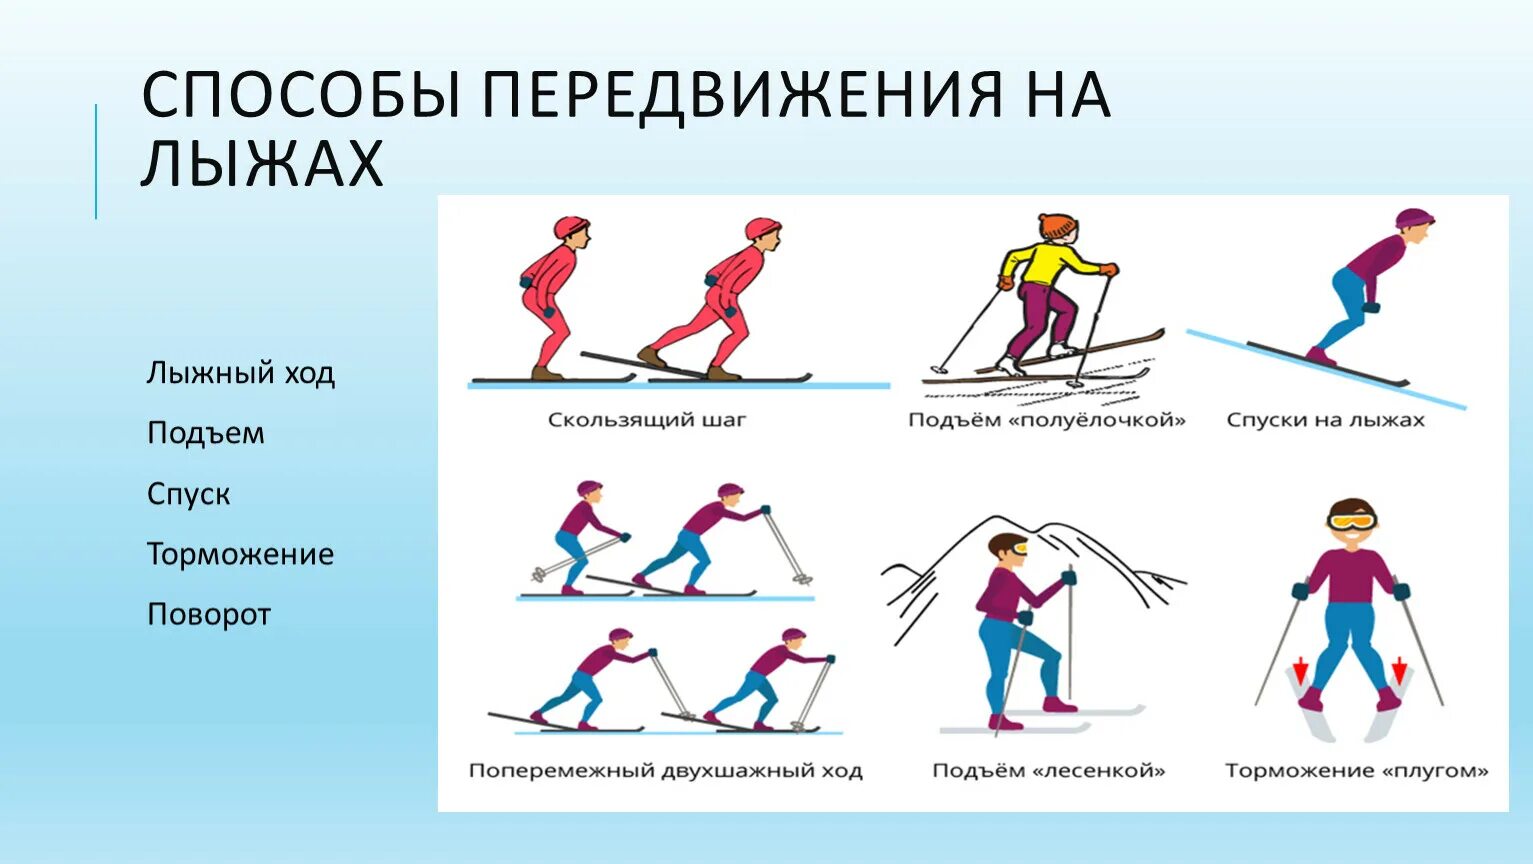 Способы передвижения на лыжах. Основные техники передвижения на лыжах. Способы перемещения на лыжах. Лыжная подготовка. При передвижении на лыжах применяют